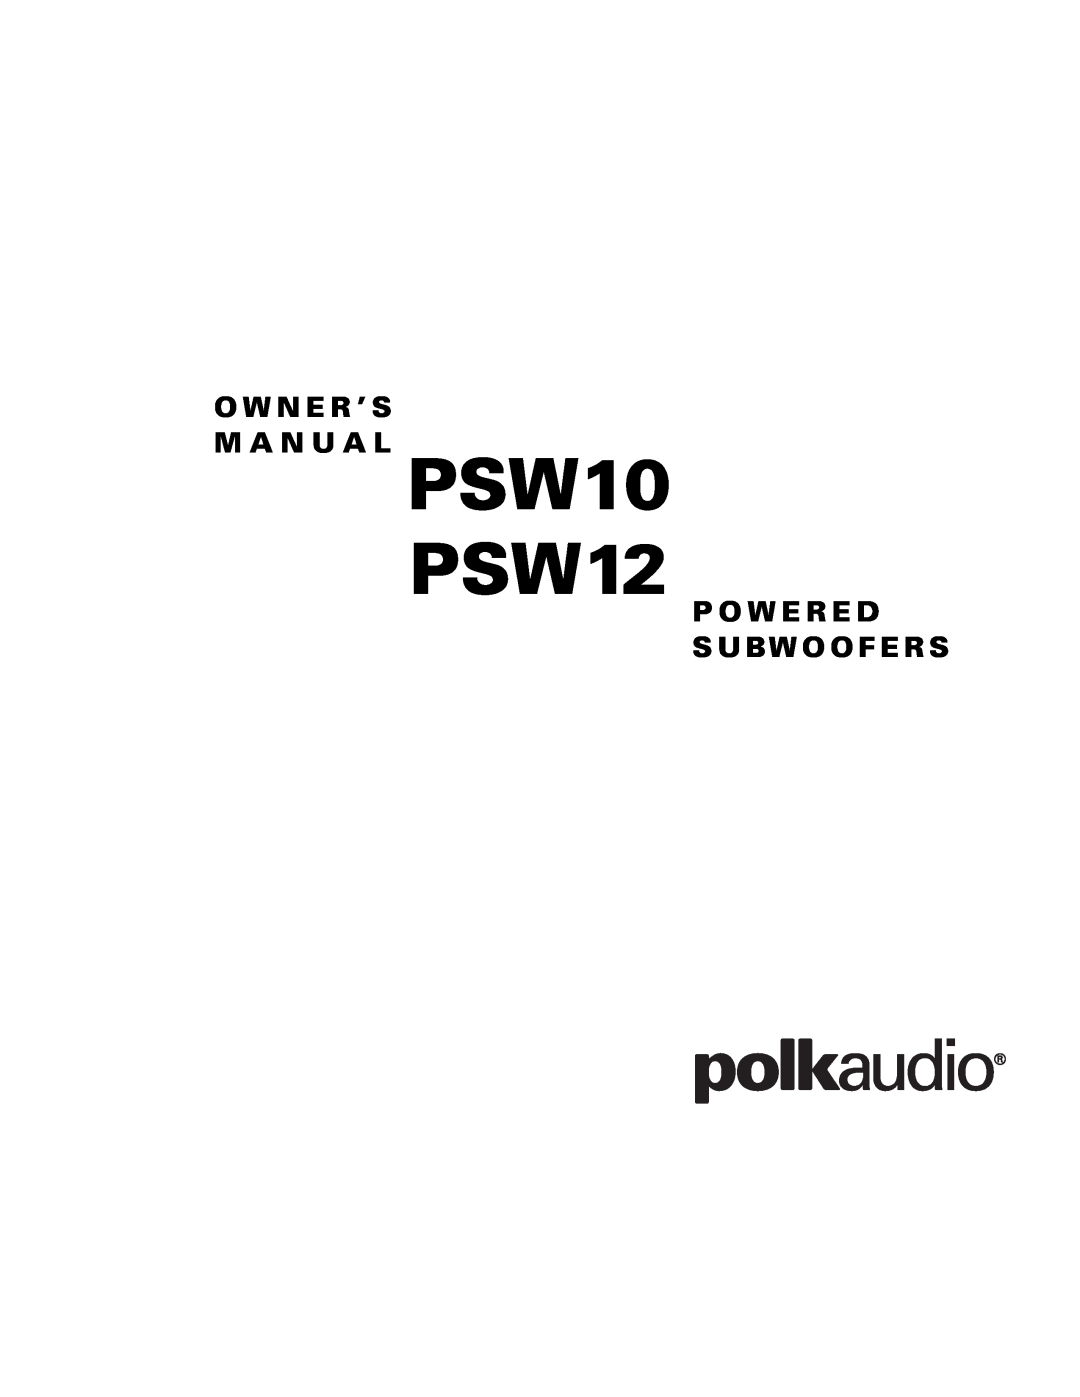 Polk Audio owner manual PSW10 PSW12, O W N E R ’ S M A N U A L, P O W E R E D S Ubw O O F E R S 